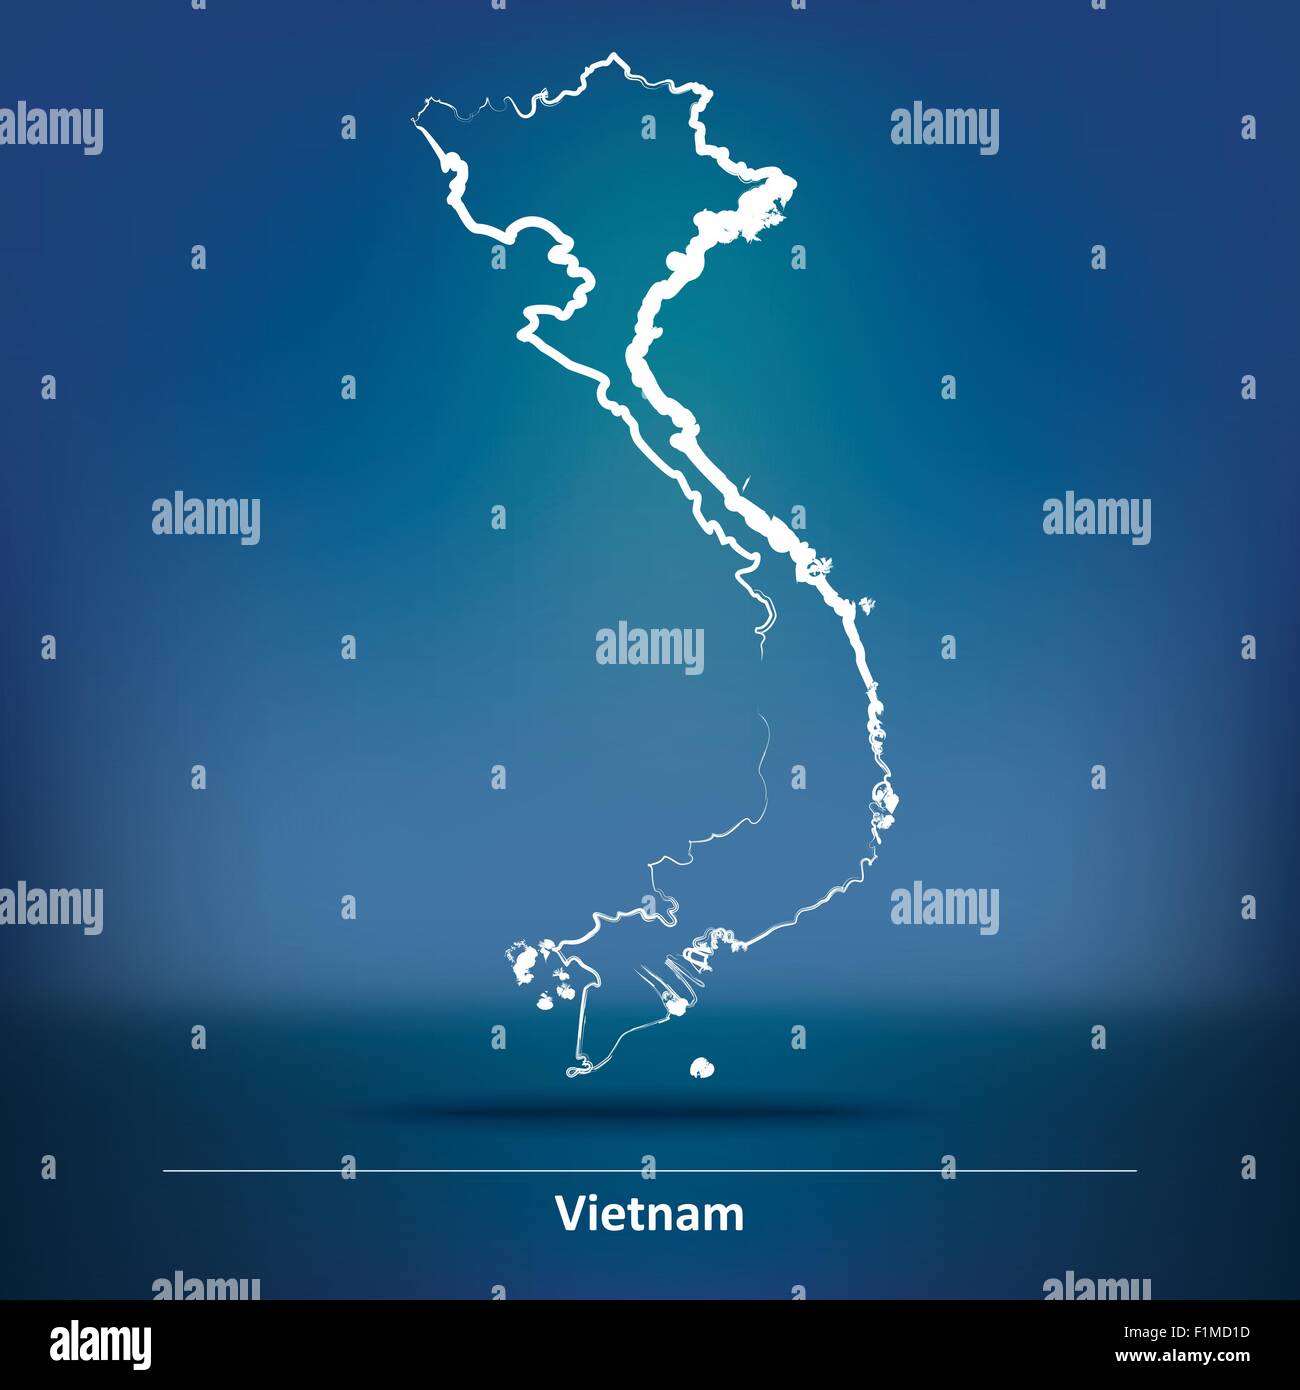 Karte von Vietnam - Vektor-Illustration Doodle Stock Vektor